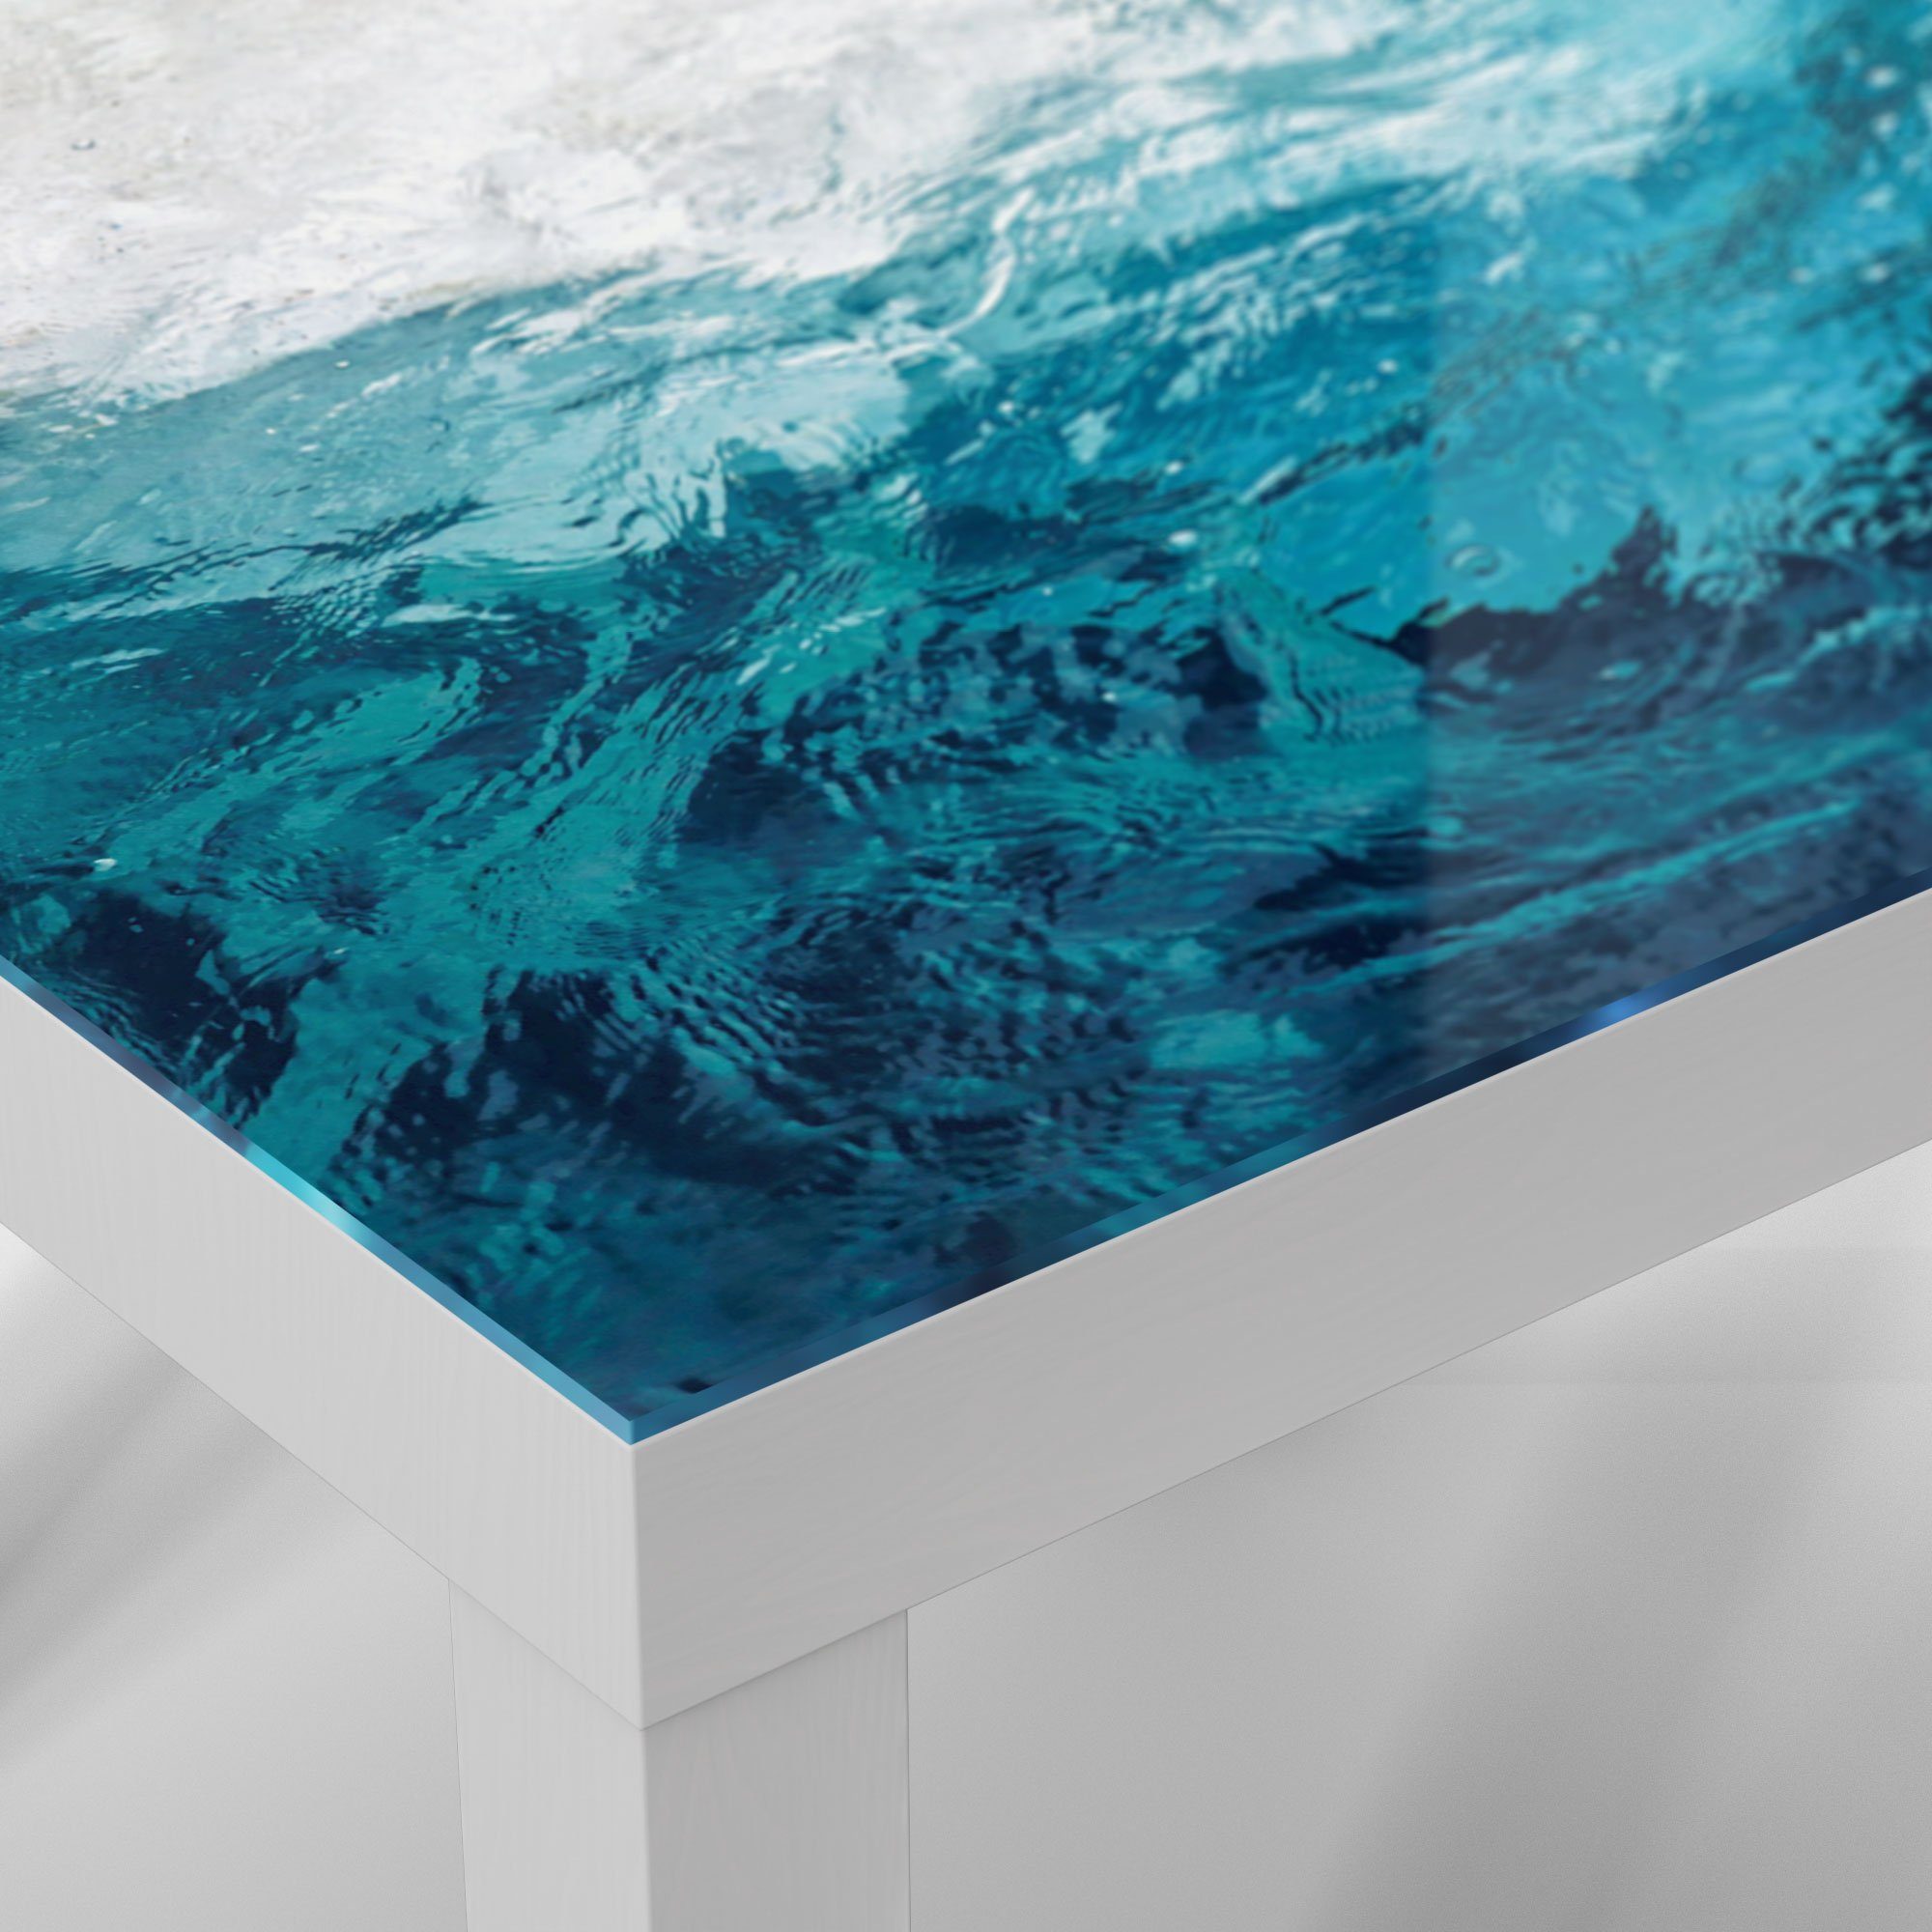 DEQORI Couchtisch Weiß Glas Beistelltisch modern Wellen', Glastisch 'Blick durch